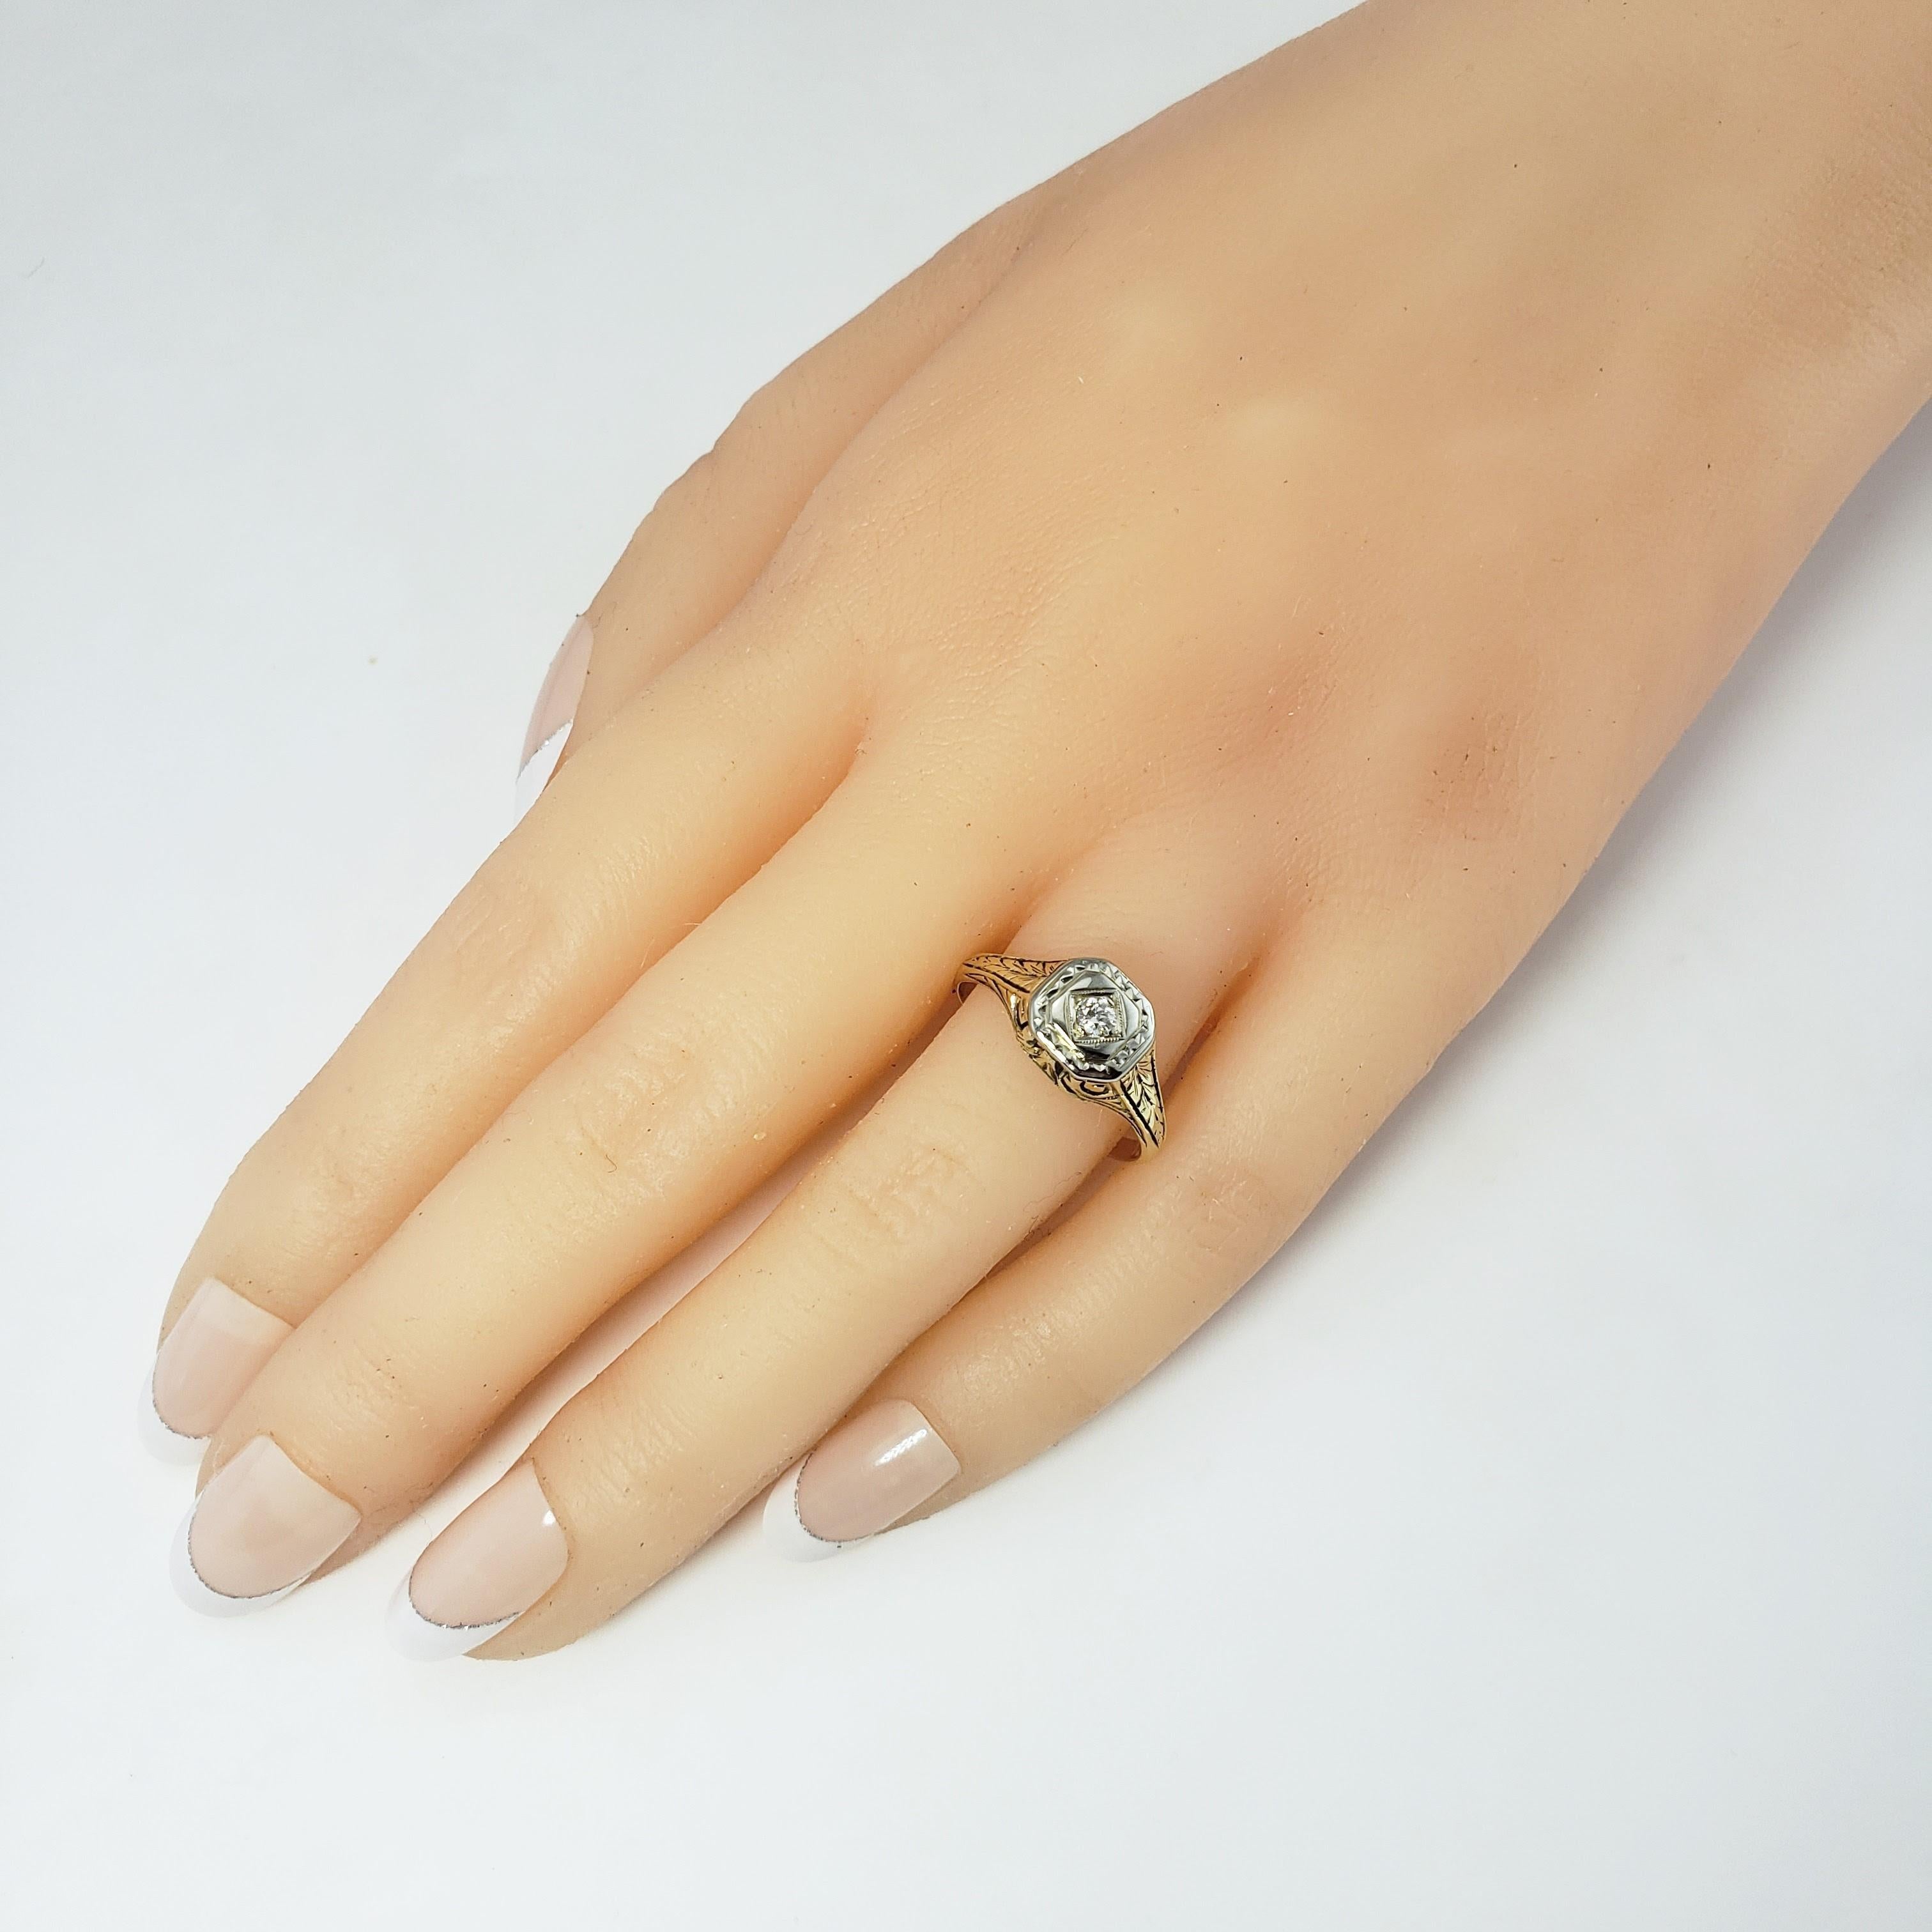 Vintage 14 Karat Gelb/Weiß Gold und Diamant Ring Größe 7.5-

Dieser funkelnde Ring besteht aus einem runden Diamanten mit Brillantschliff, der in wunderschön detailliertem 14-karätigem Gelb- und Weißgold gefasst ist.

Breite: 8 mm. Schaft: 2